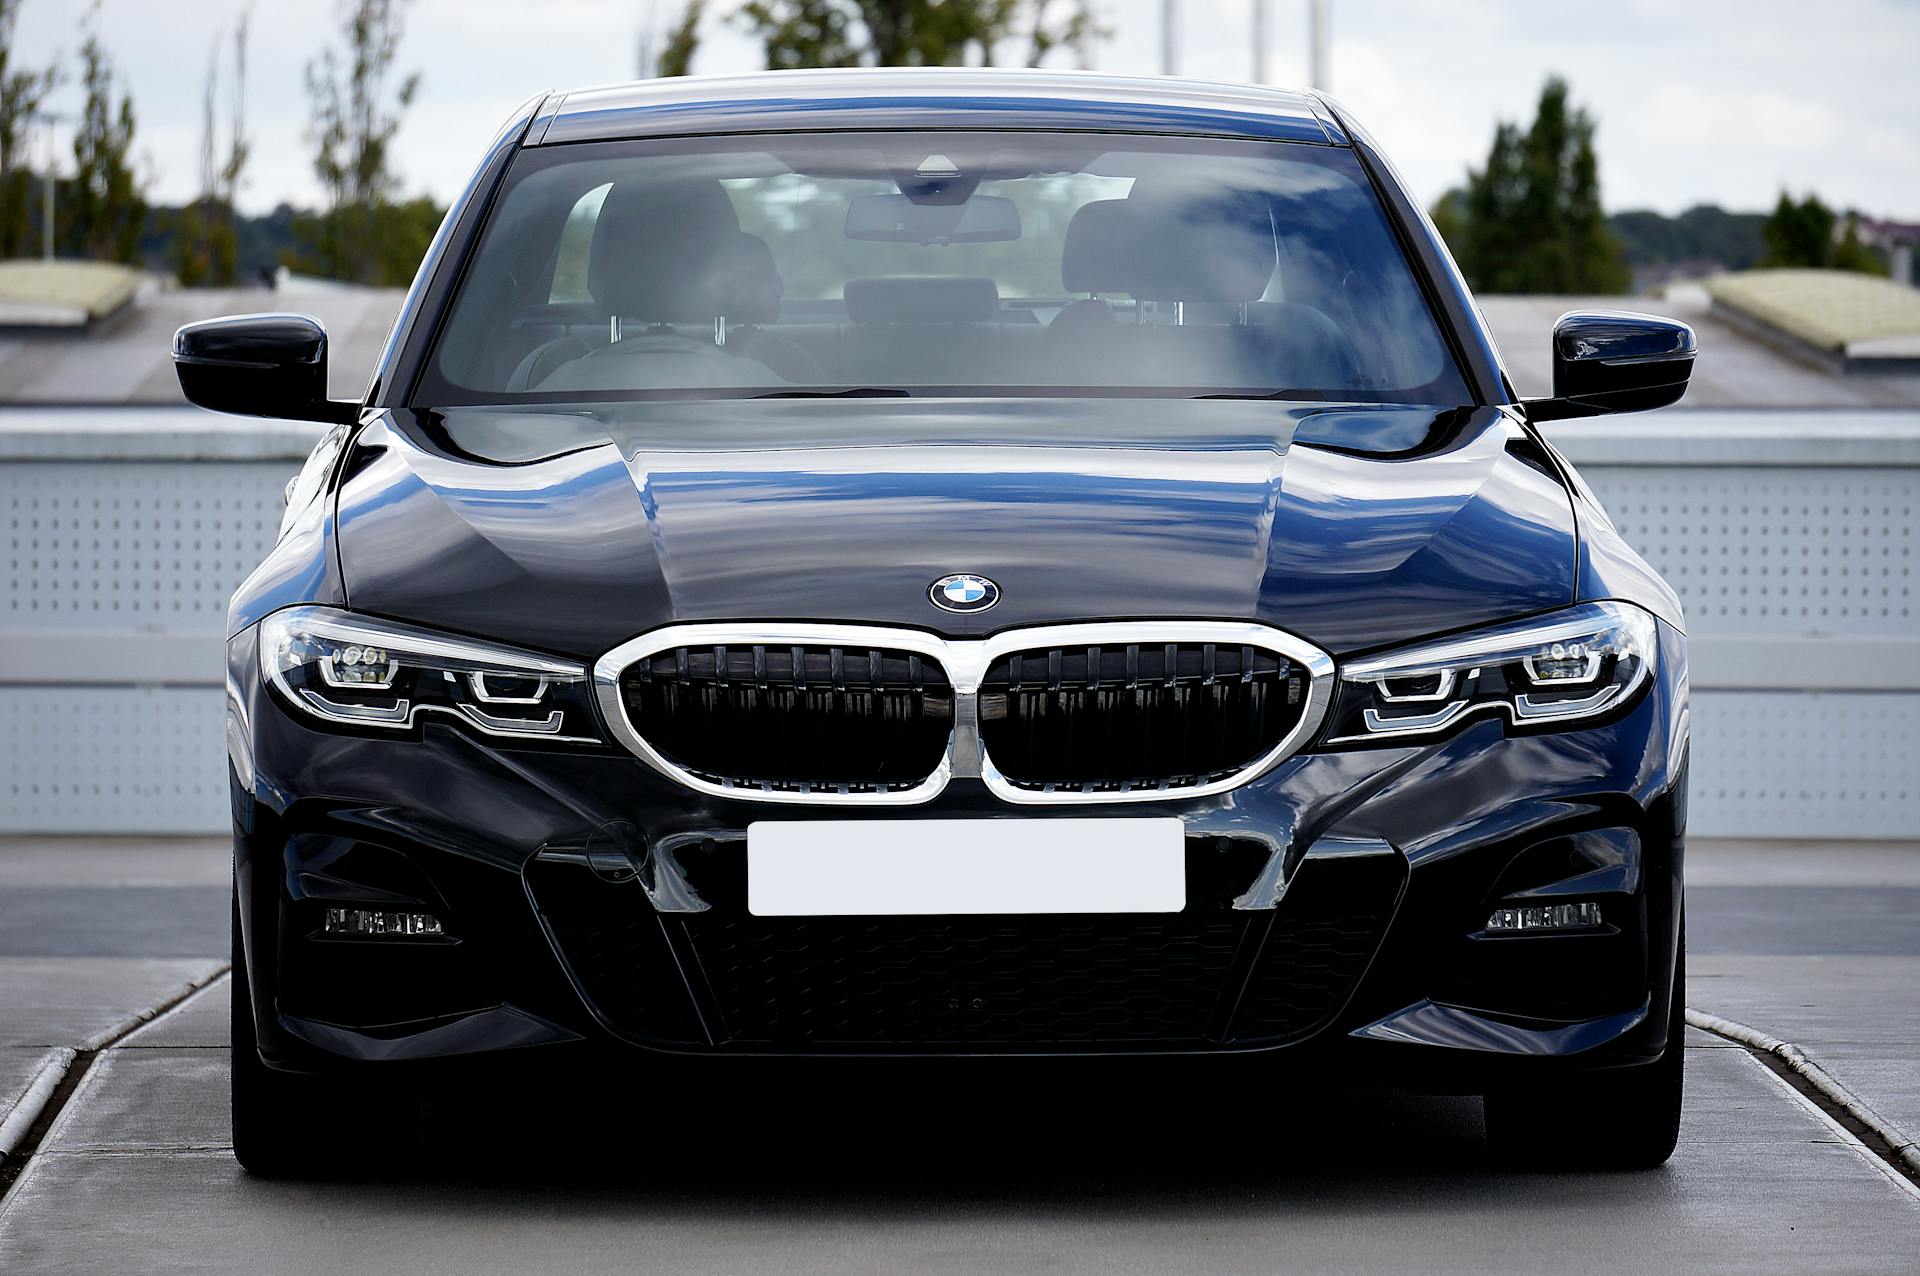 A black new BMW 320D | Source: Pexels